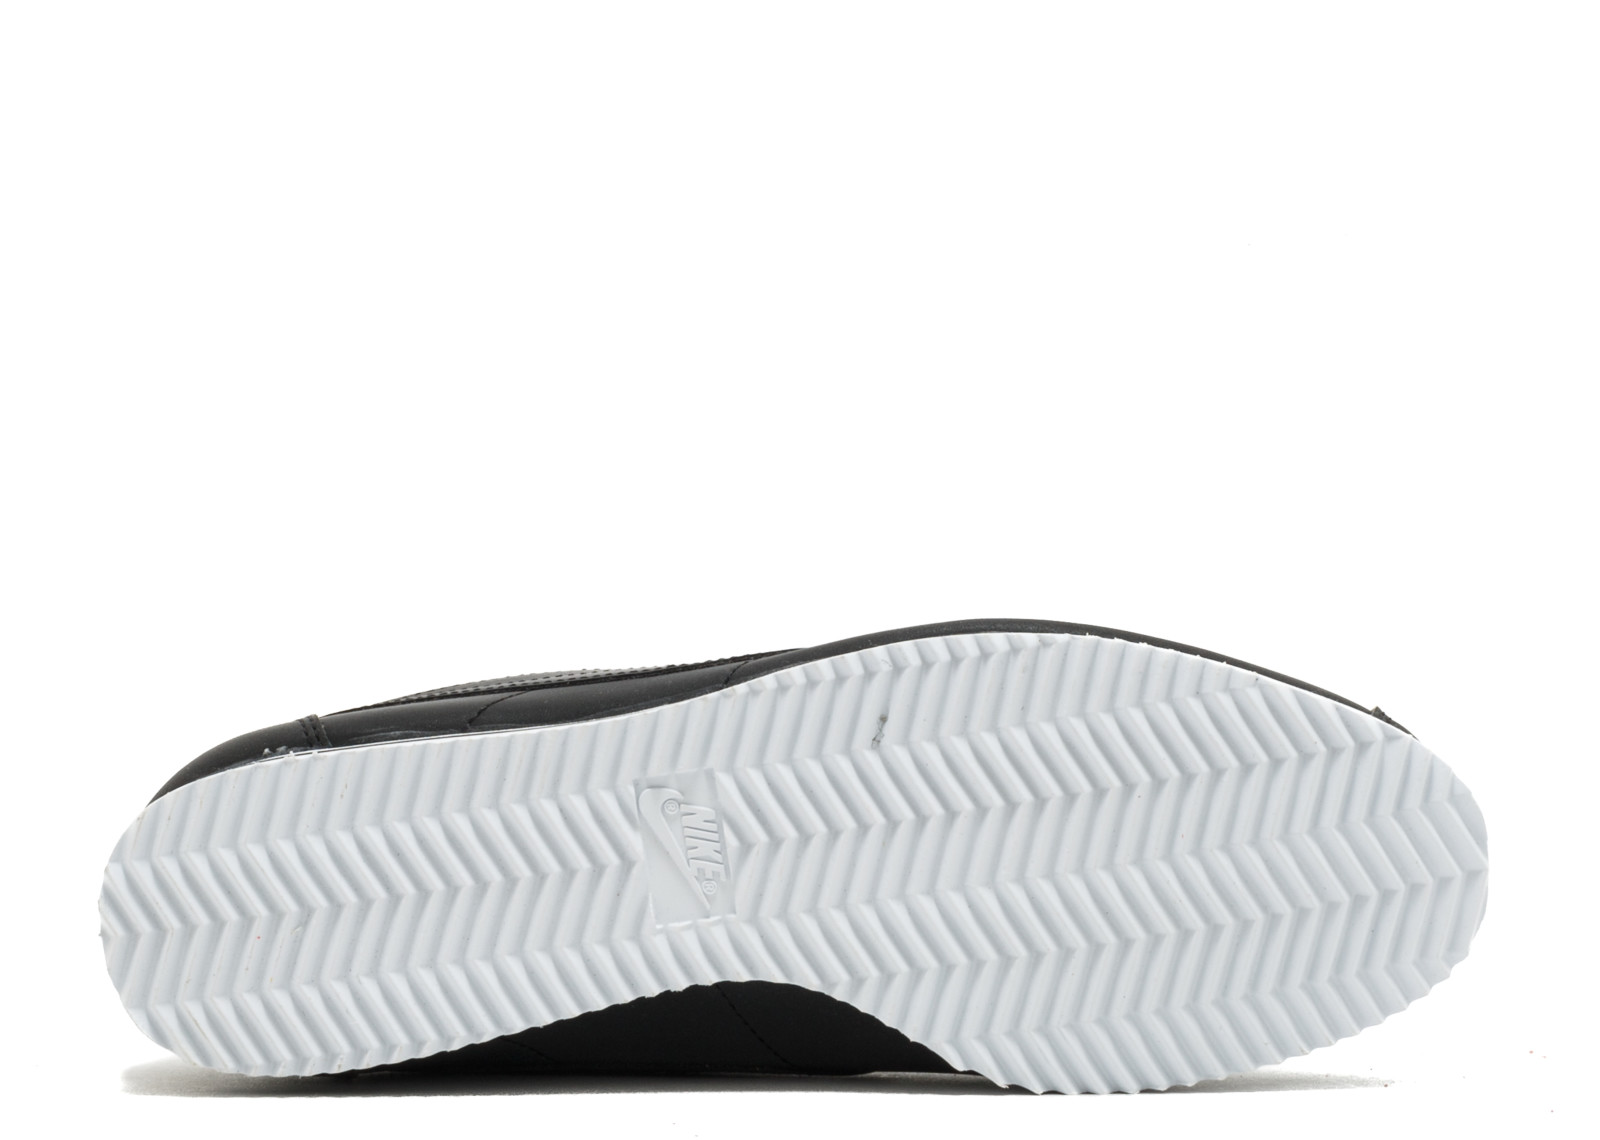 Nike Cortez Basic SE Black/White - 902803-003